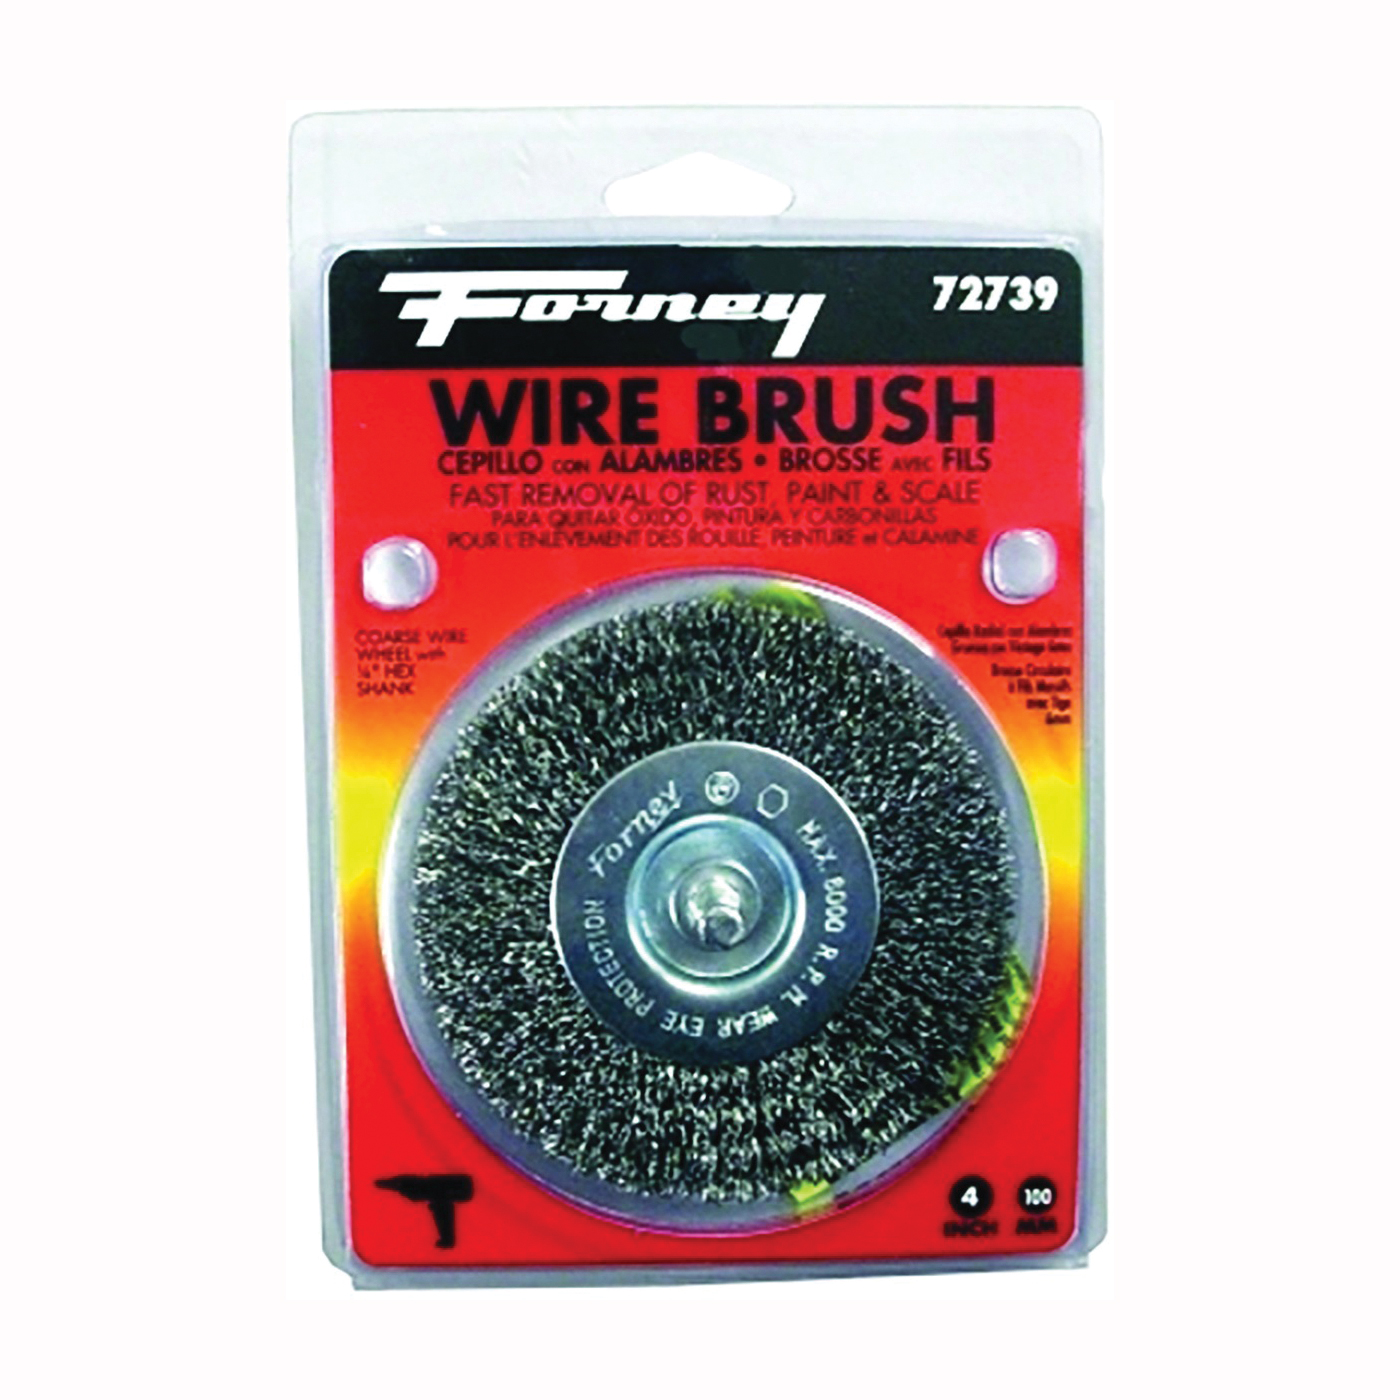 72739 Wire Wheel Brush, 4 in Dia, 0.012 in Dia Bristle